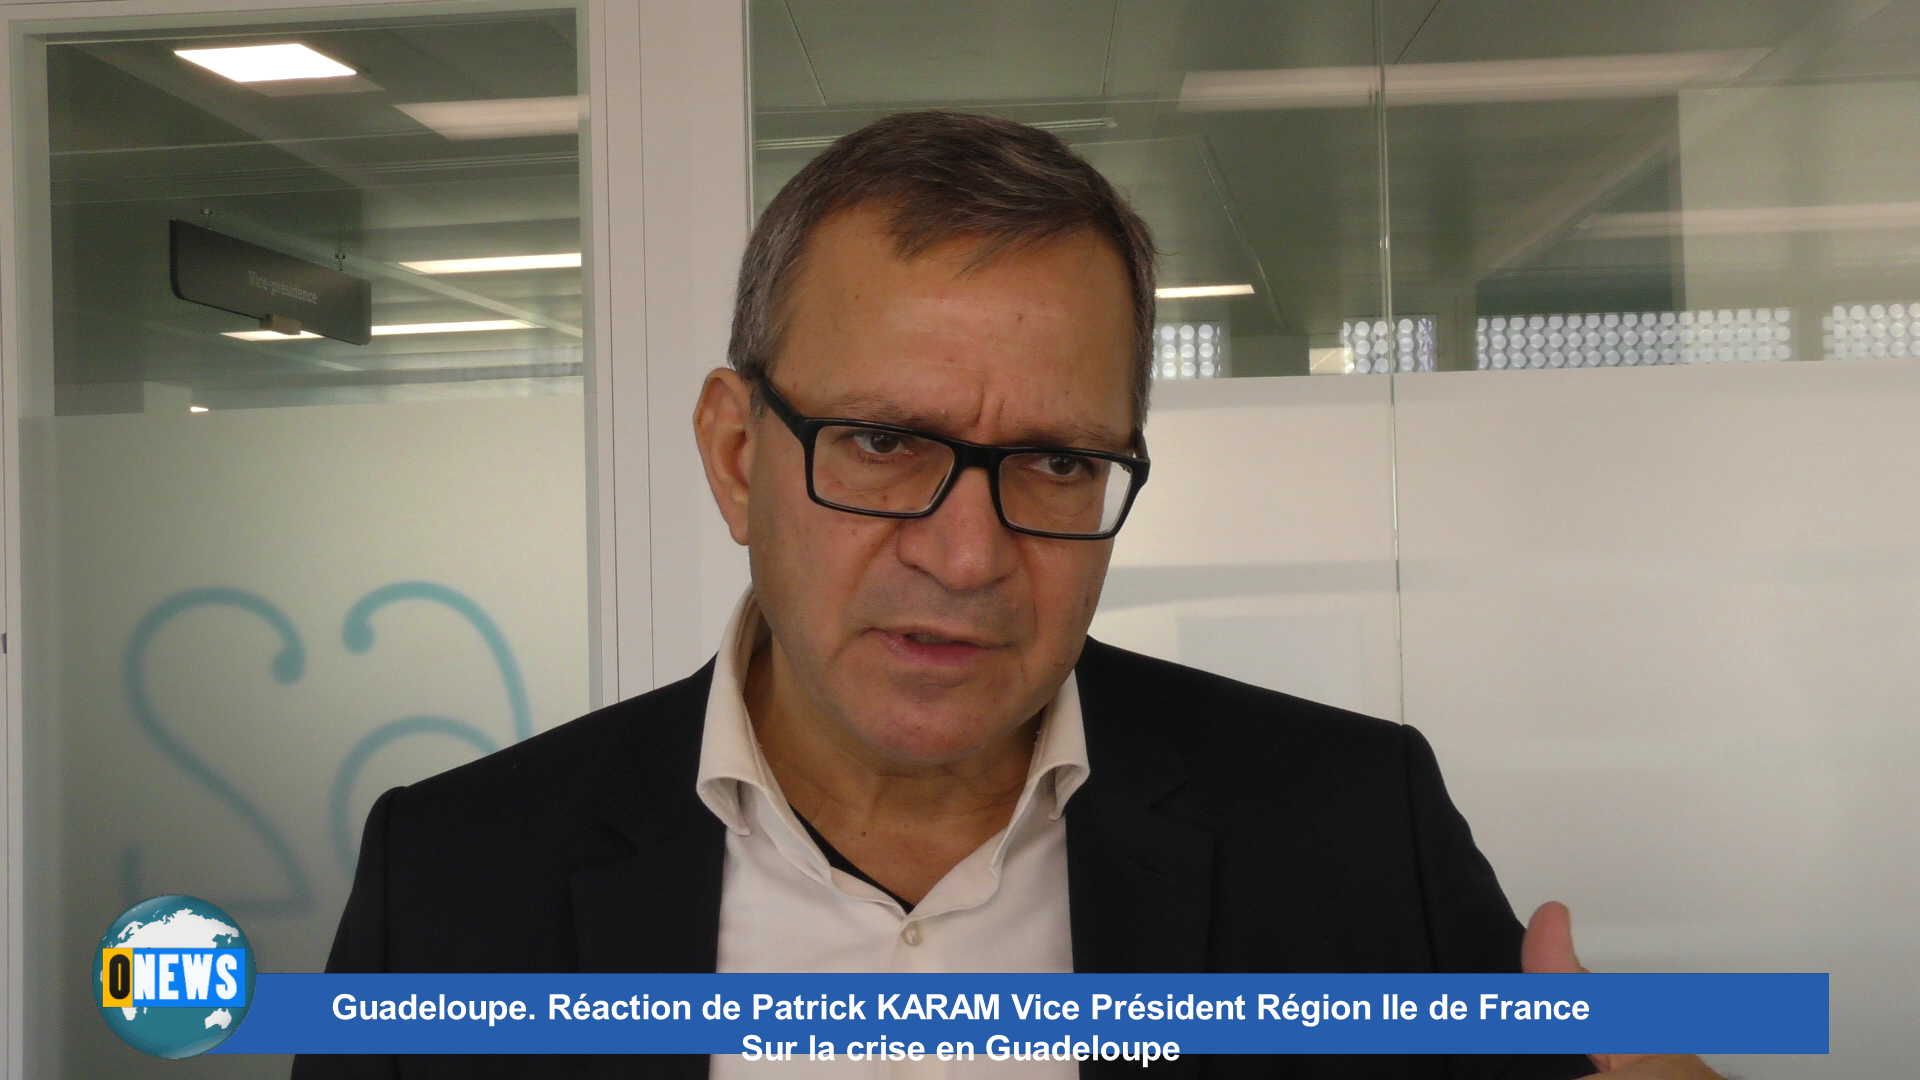 [Vidéo]Guadeloupe. Réaction de Patrick KARAM Vice Pdt région Ile de France sur la crise